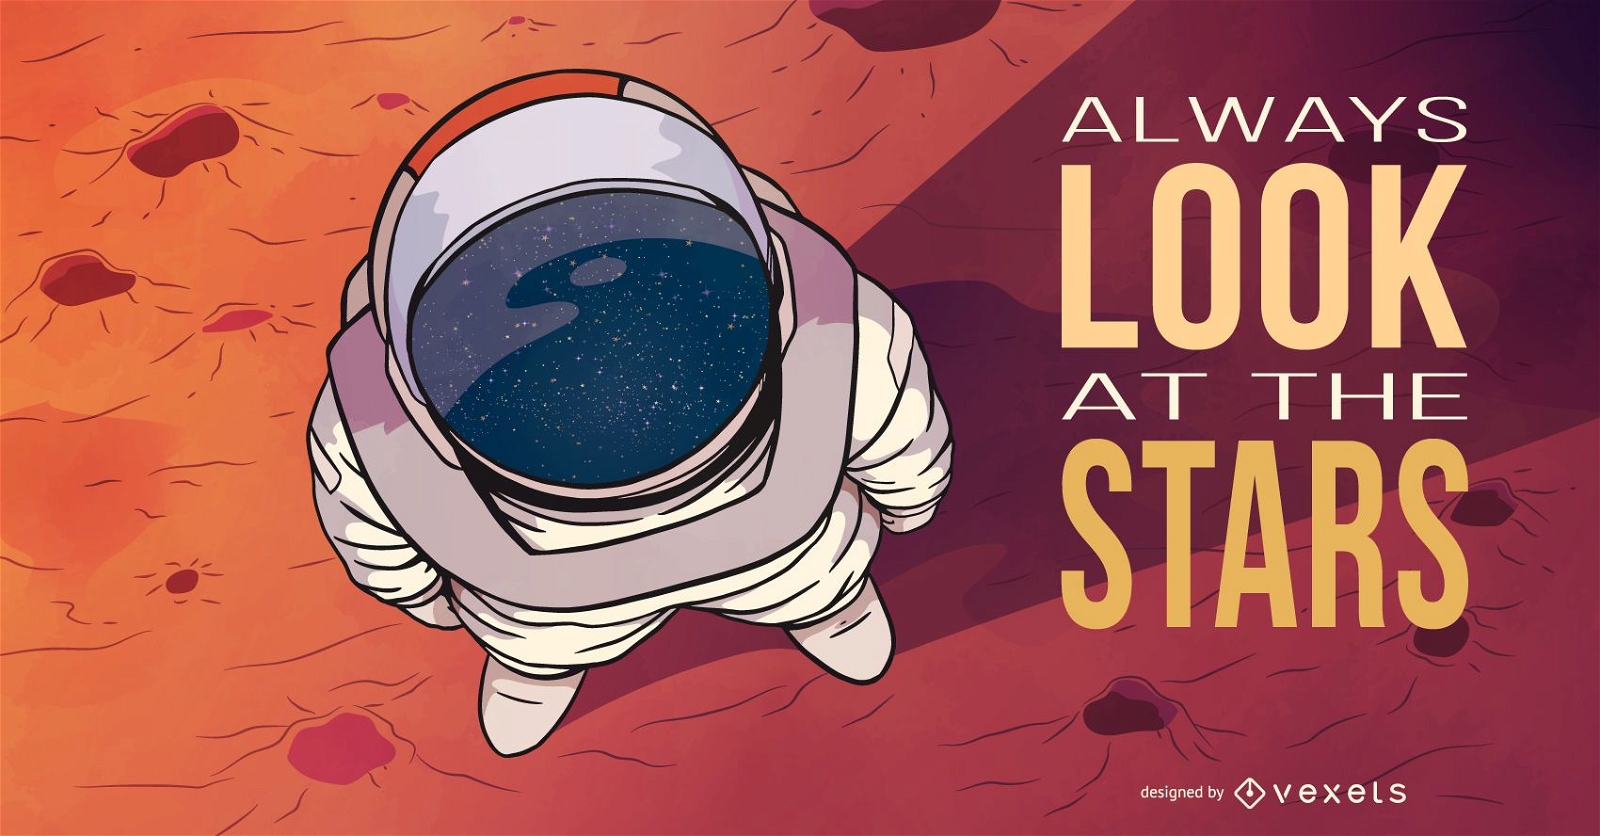 Astronaut stars illustration